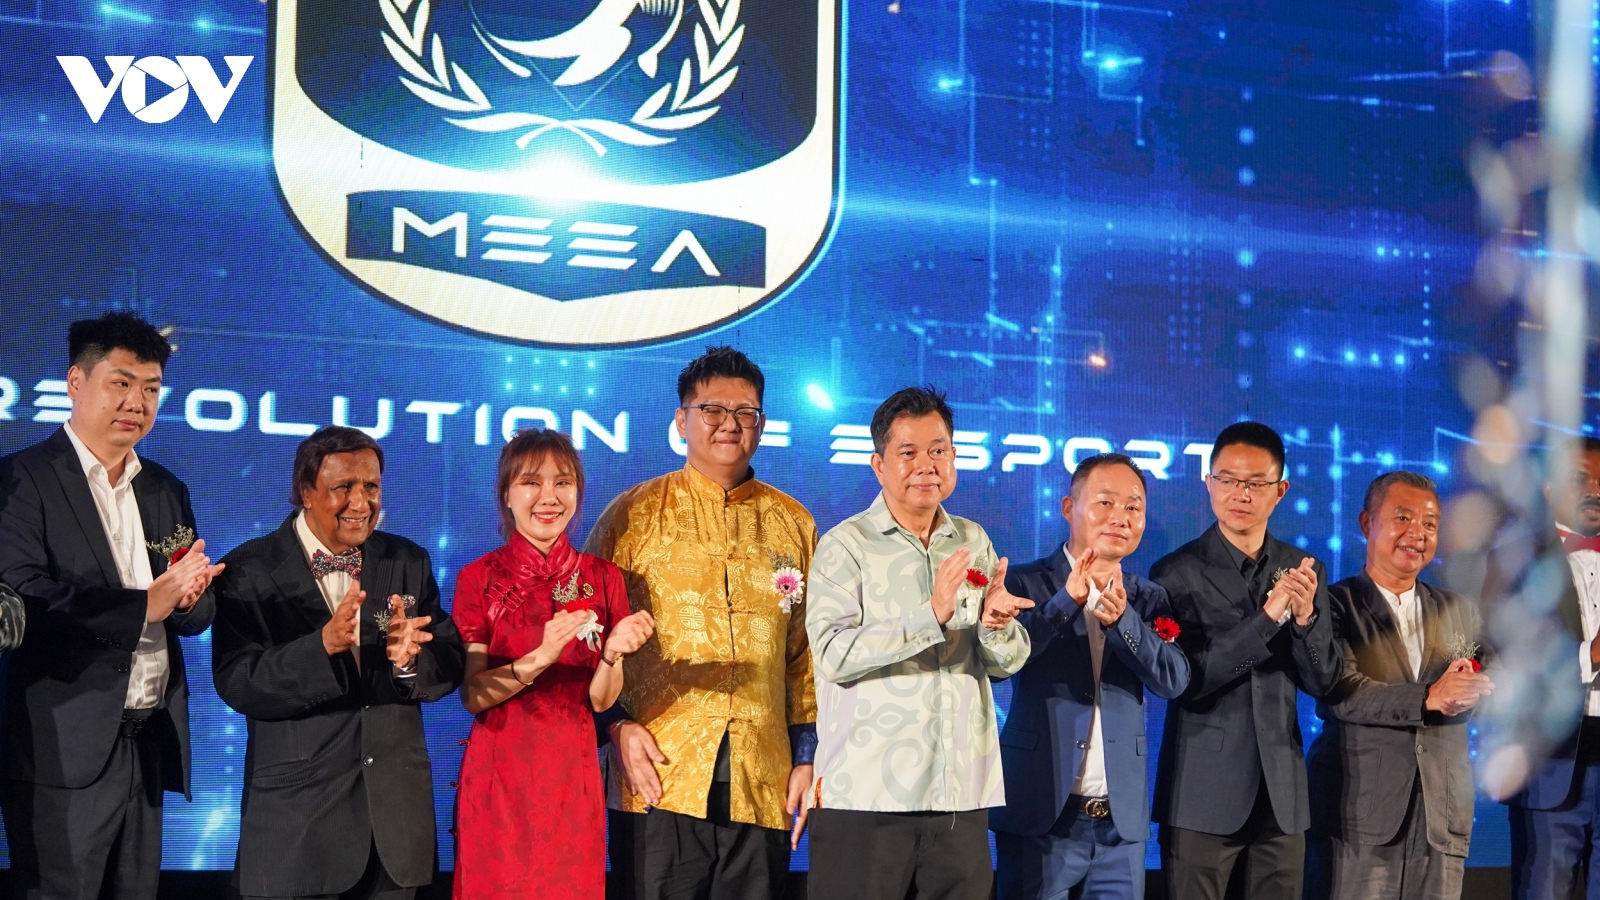 Malaysia ra mắt Hiệp hội thể thao Điện tử: Kỳ vọng nâng tầm E-sport Đông Nam Á